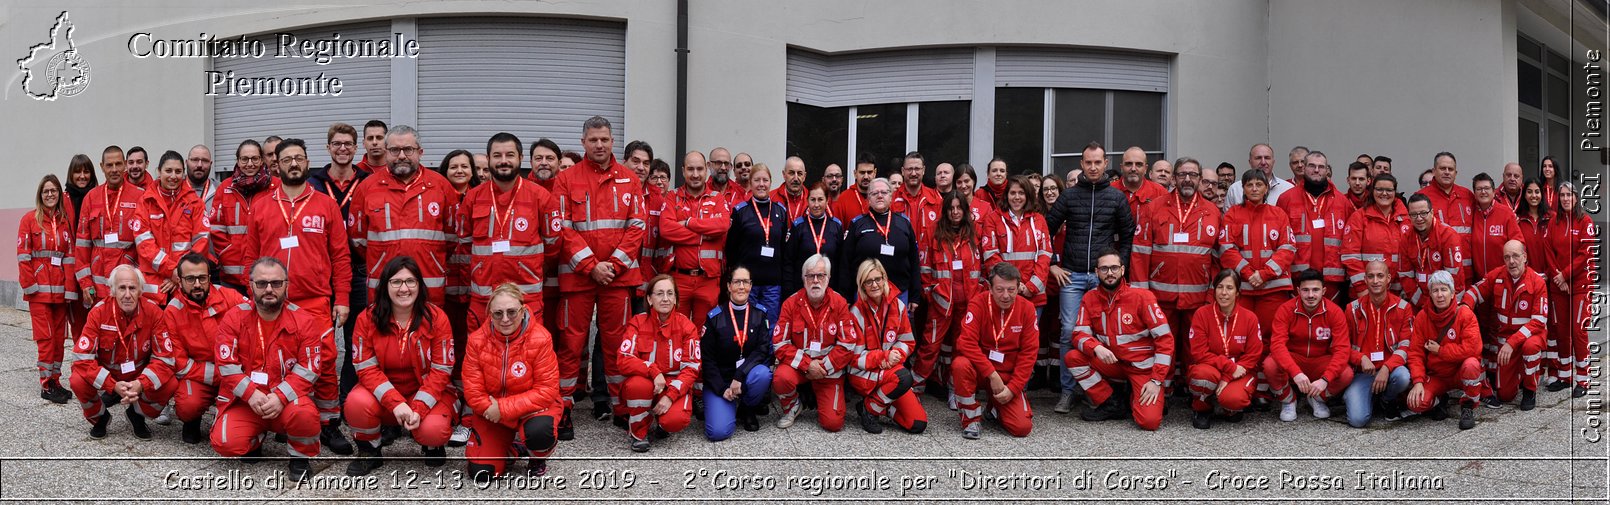 Castello di Annone 12-13 Ottobre 2019 - 2Corso regionale per "Direttori di Corso" - Croce Rossa Italiana